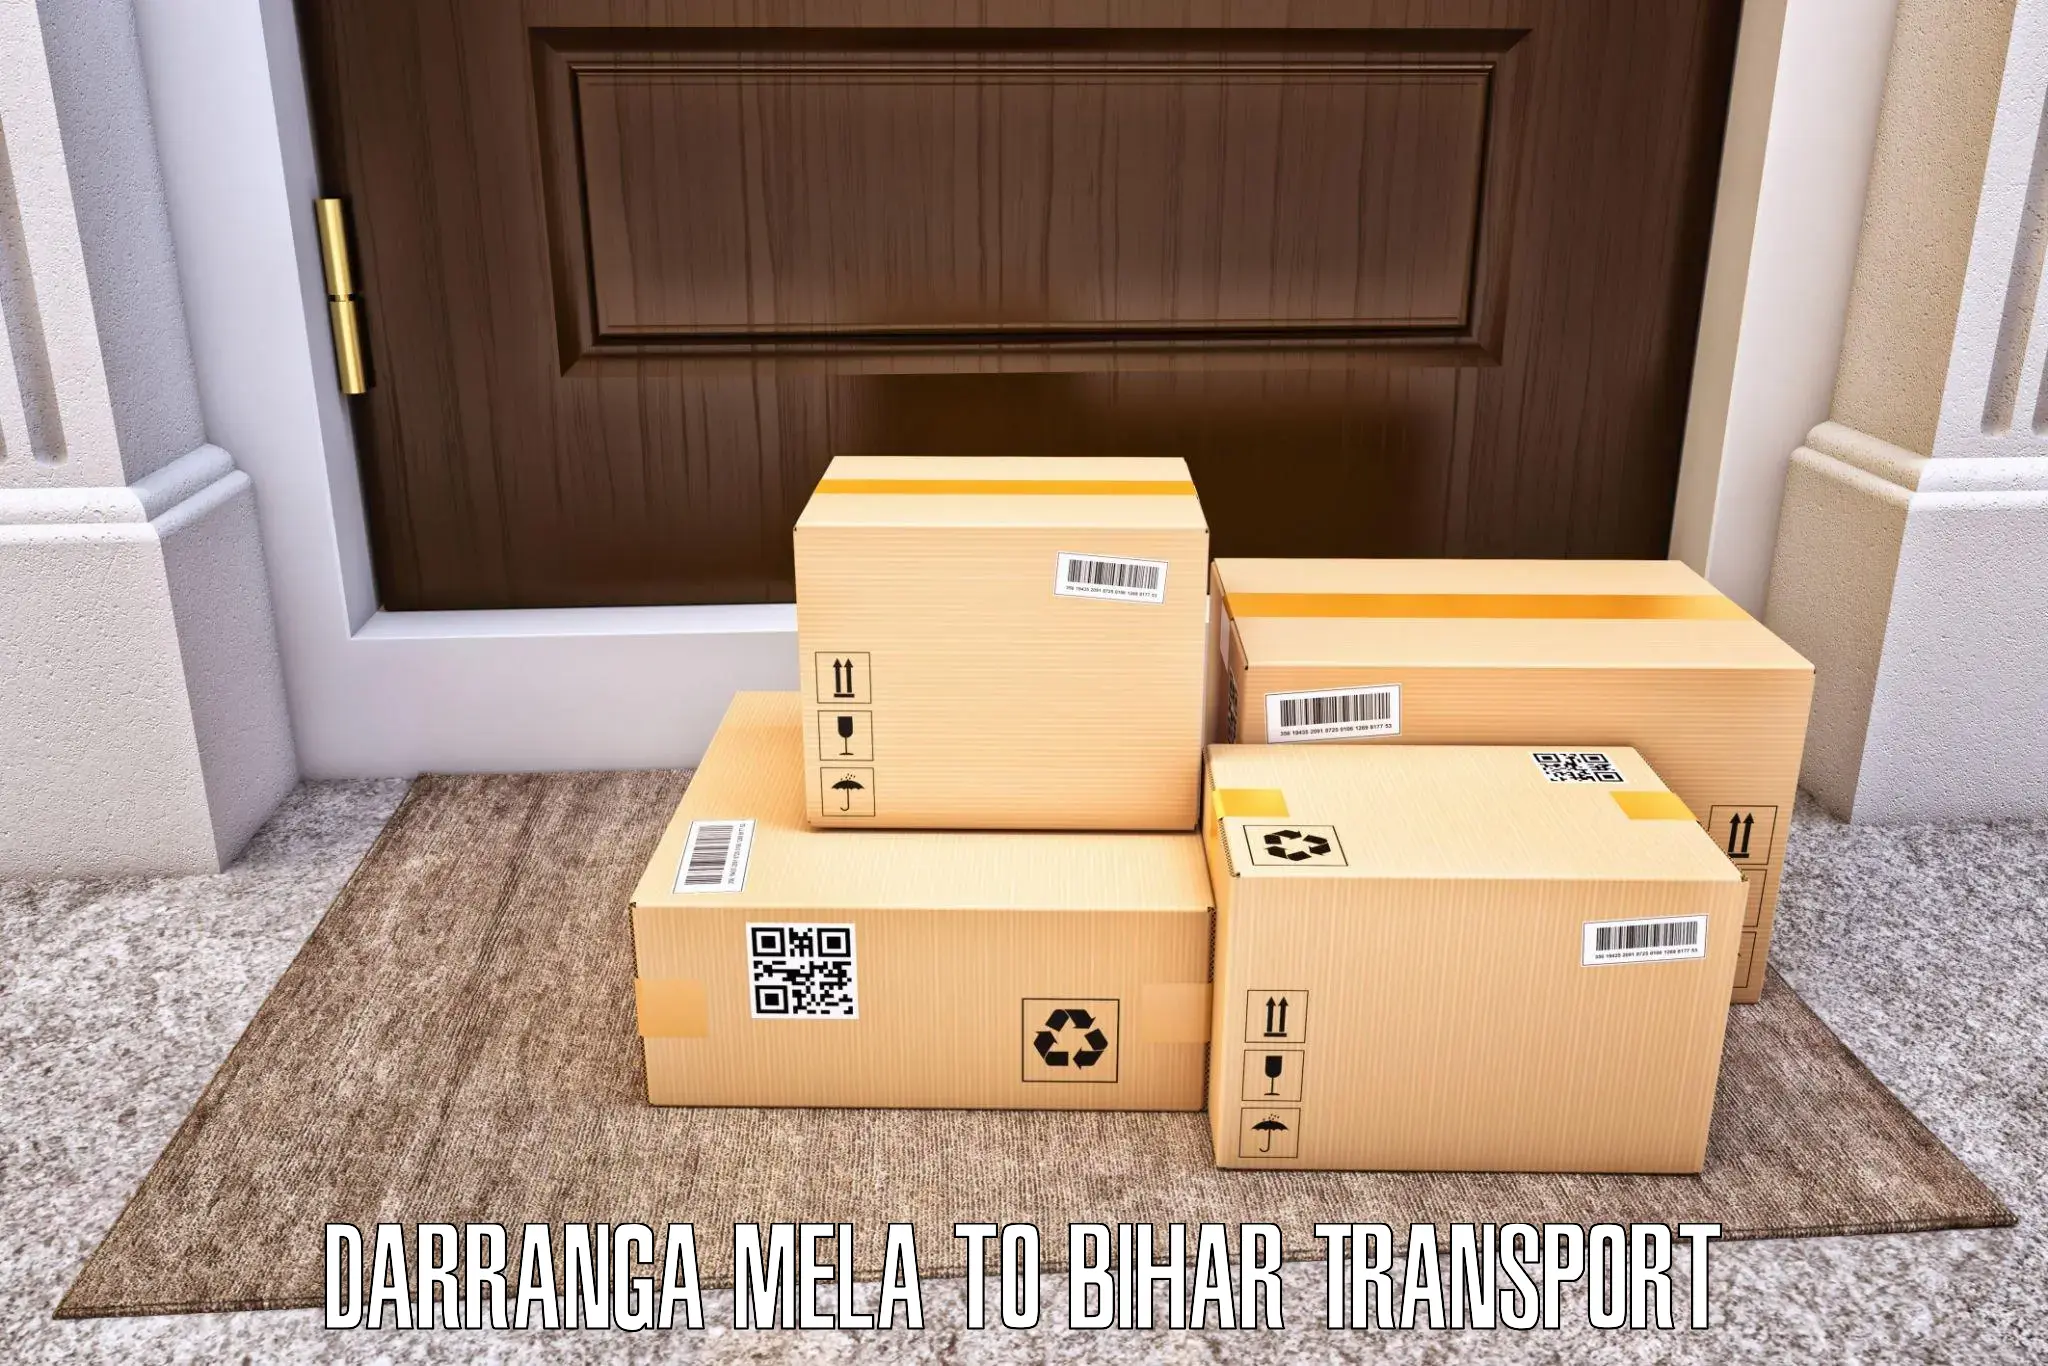 Air cargo transport services in Darranga Mela to Danapur